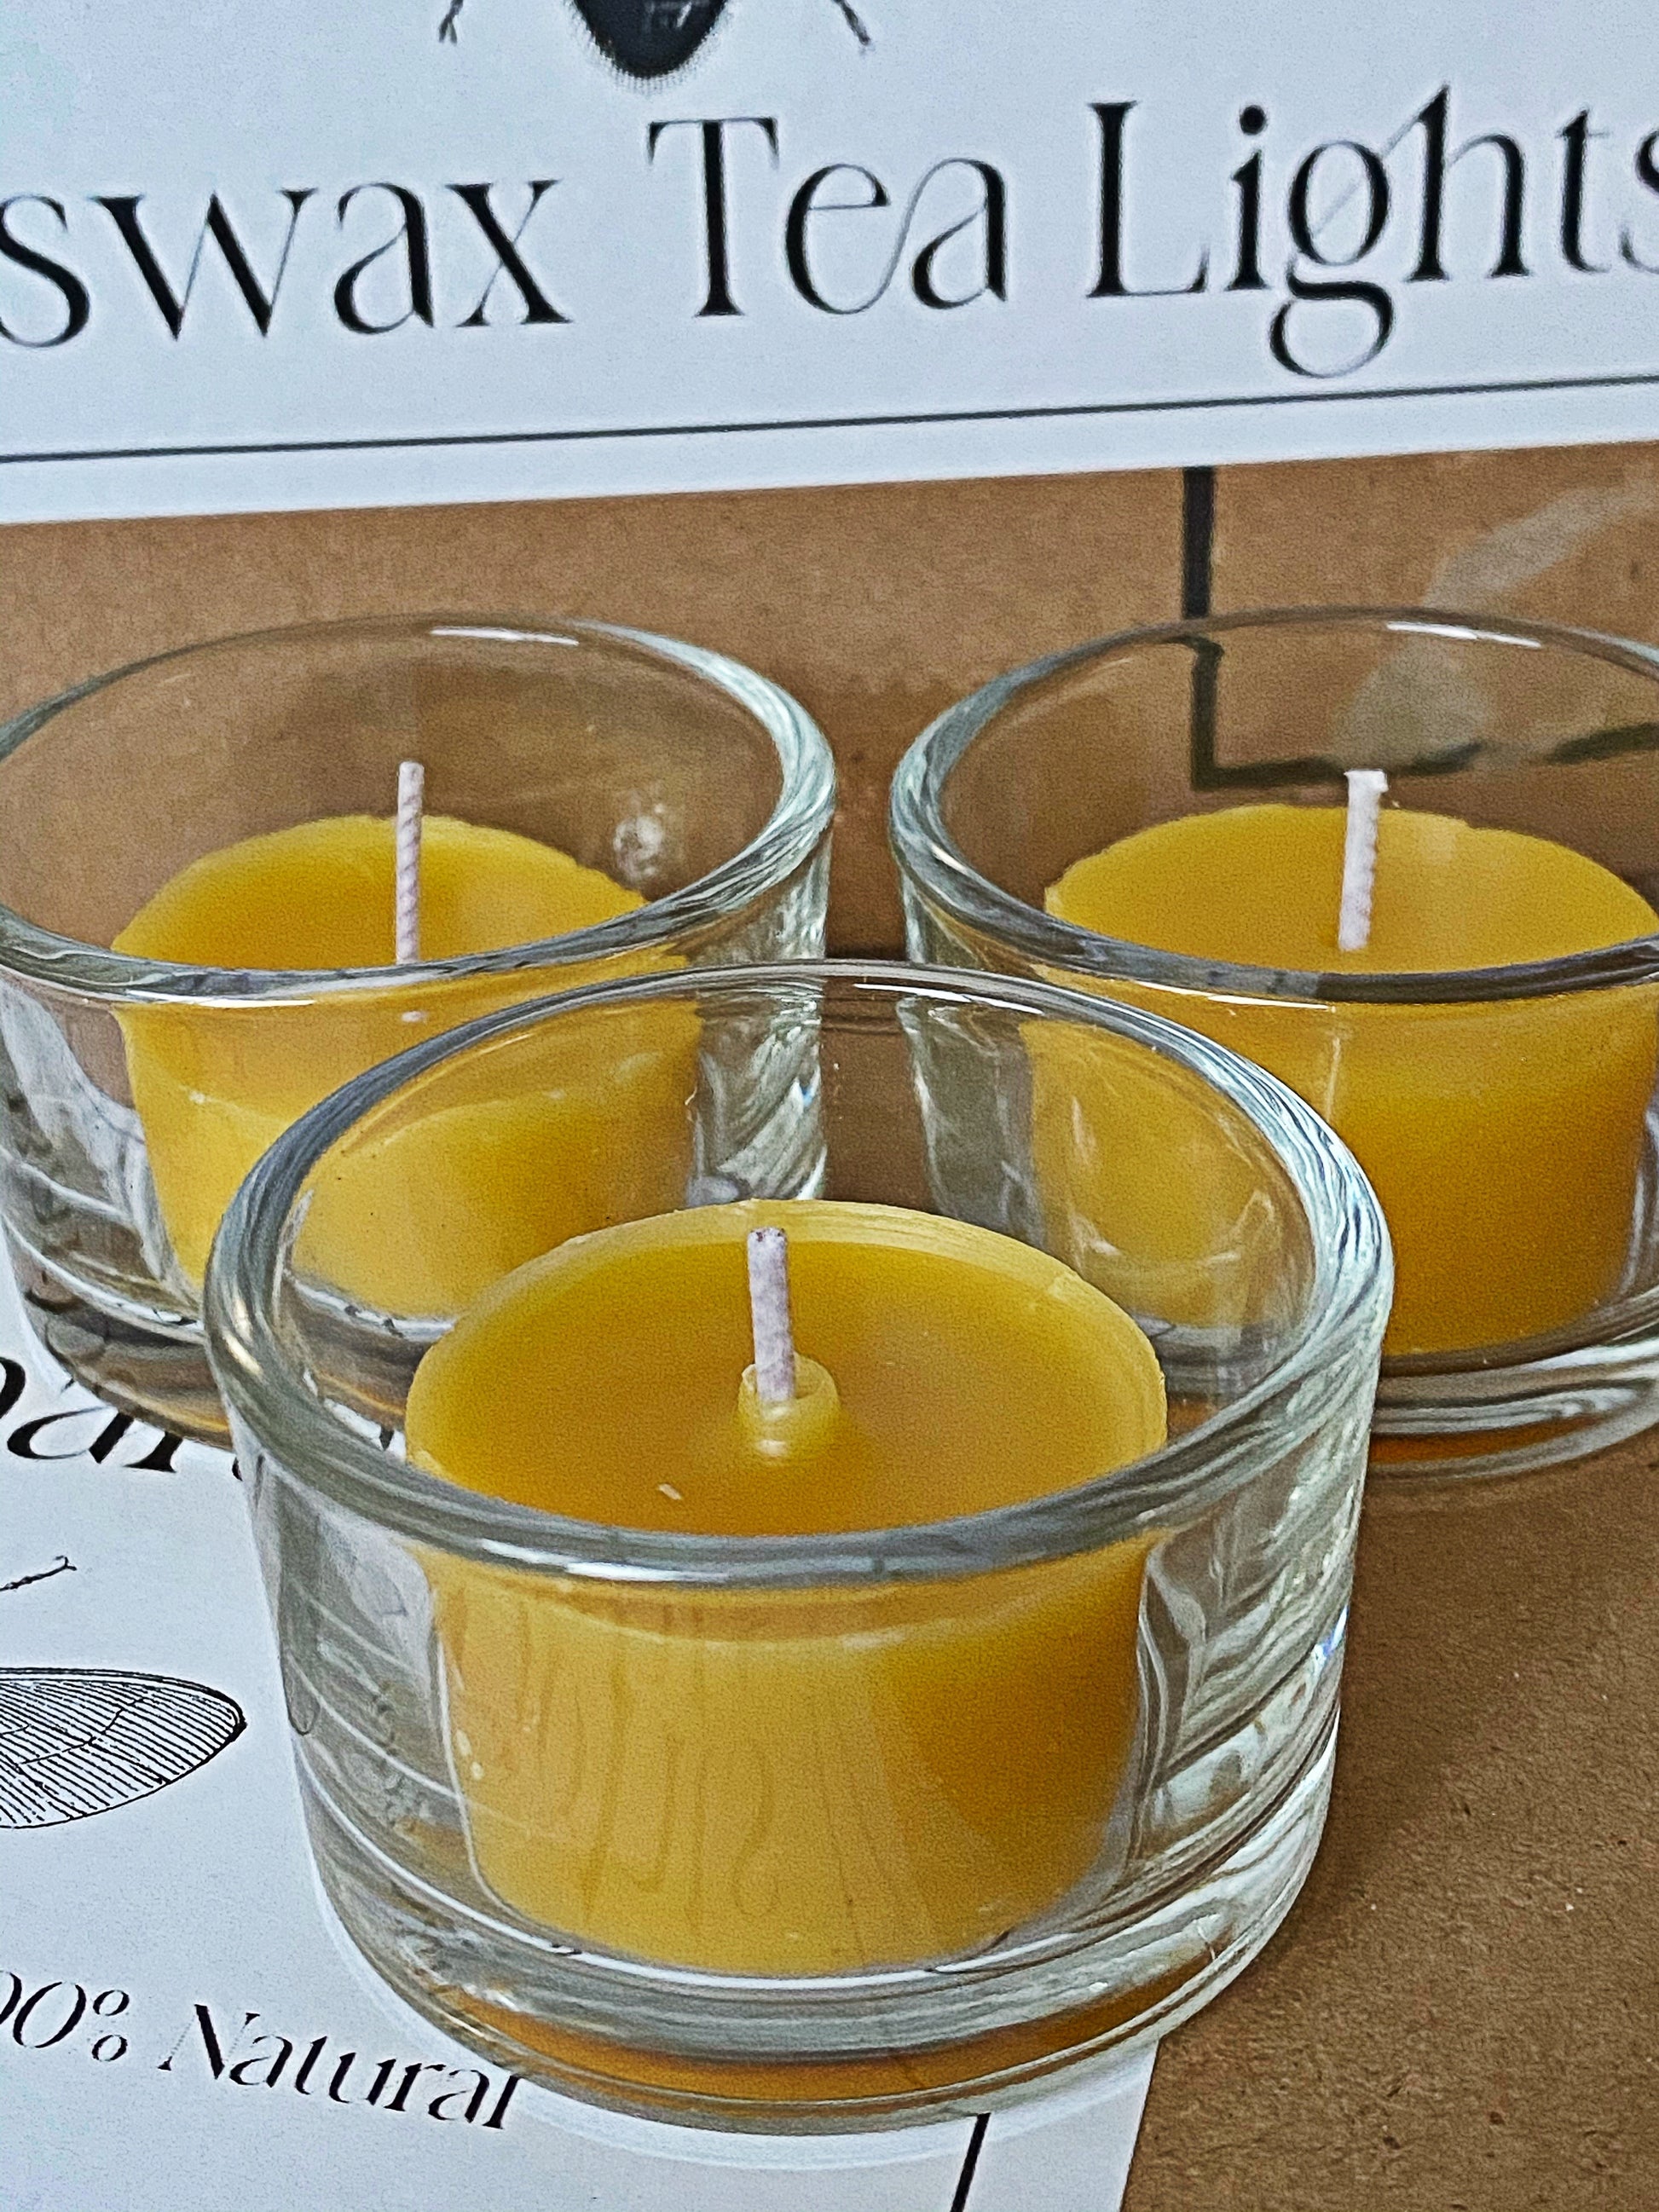 Beeswax Tea Light Candles set of 12 – Santa Barbara Hives